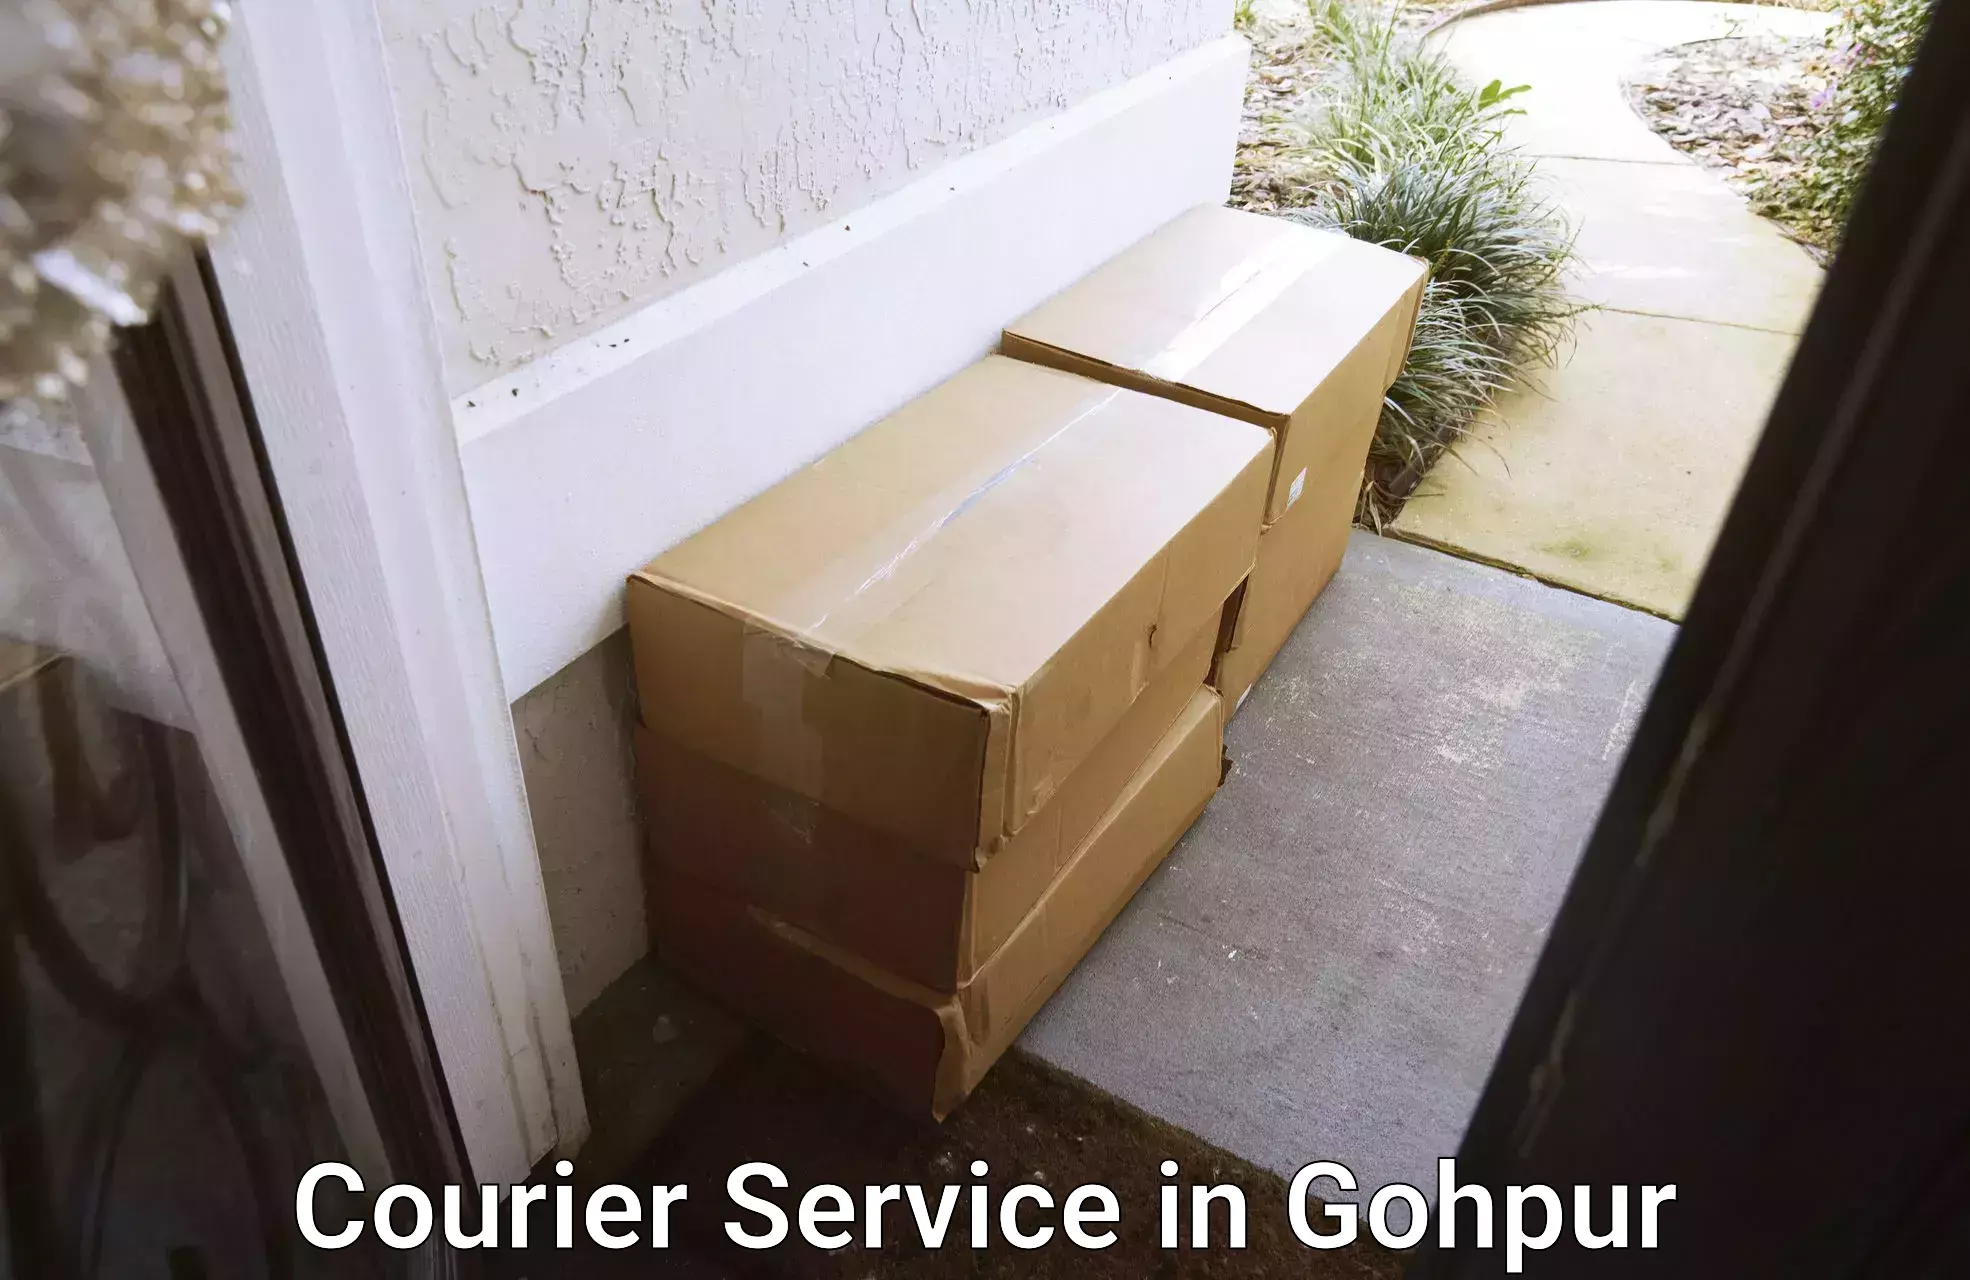 Door-to-door shipping in Gohpur